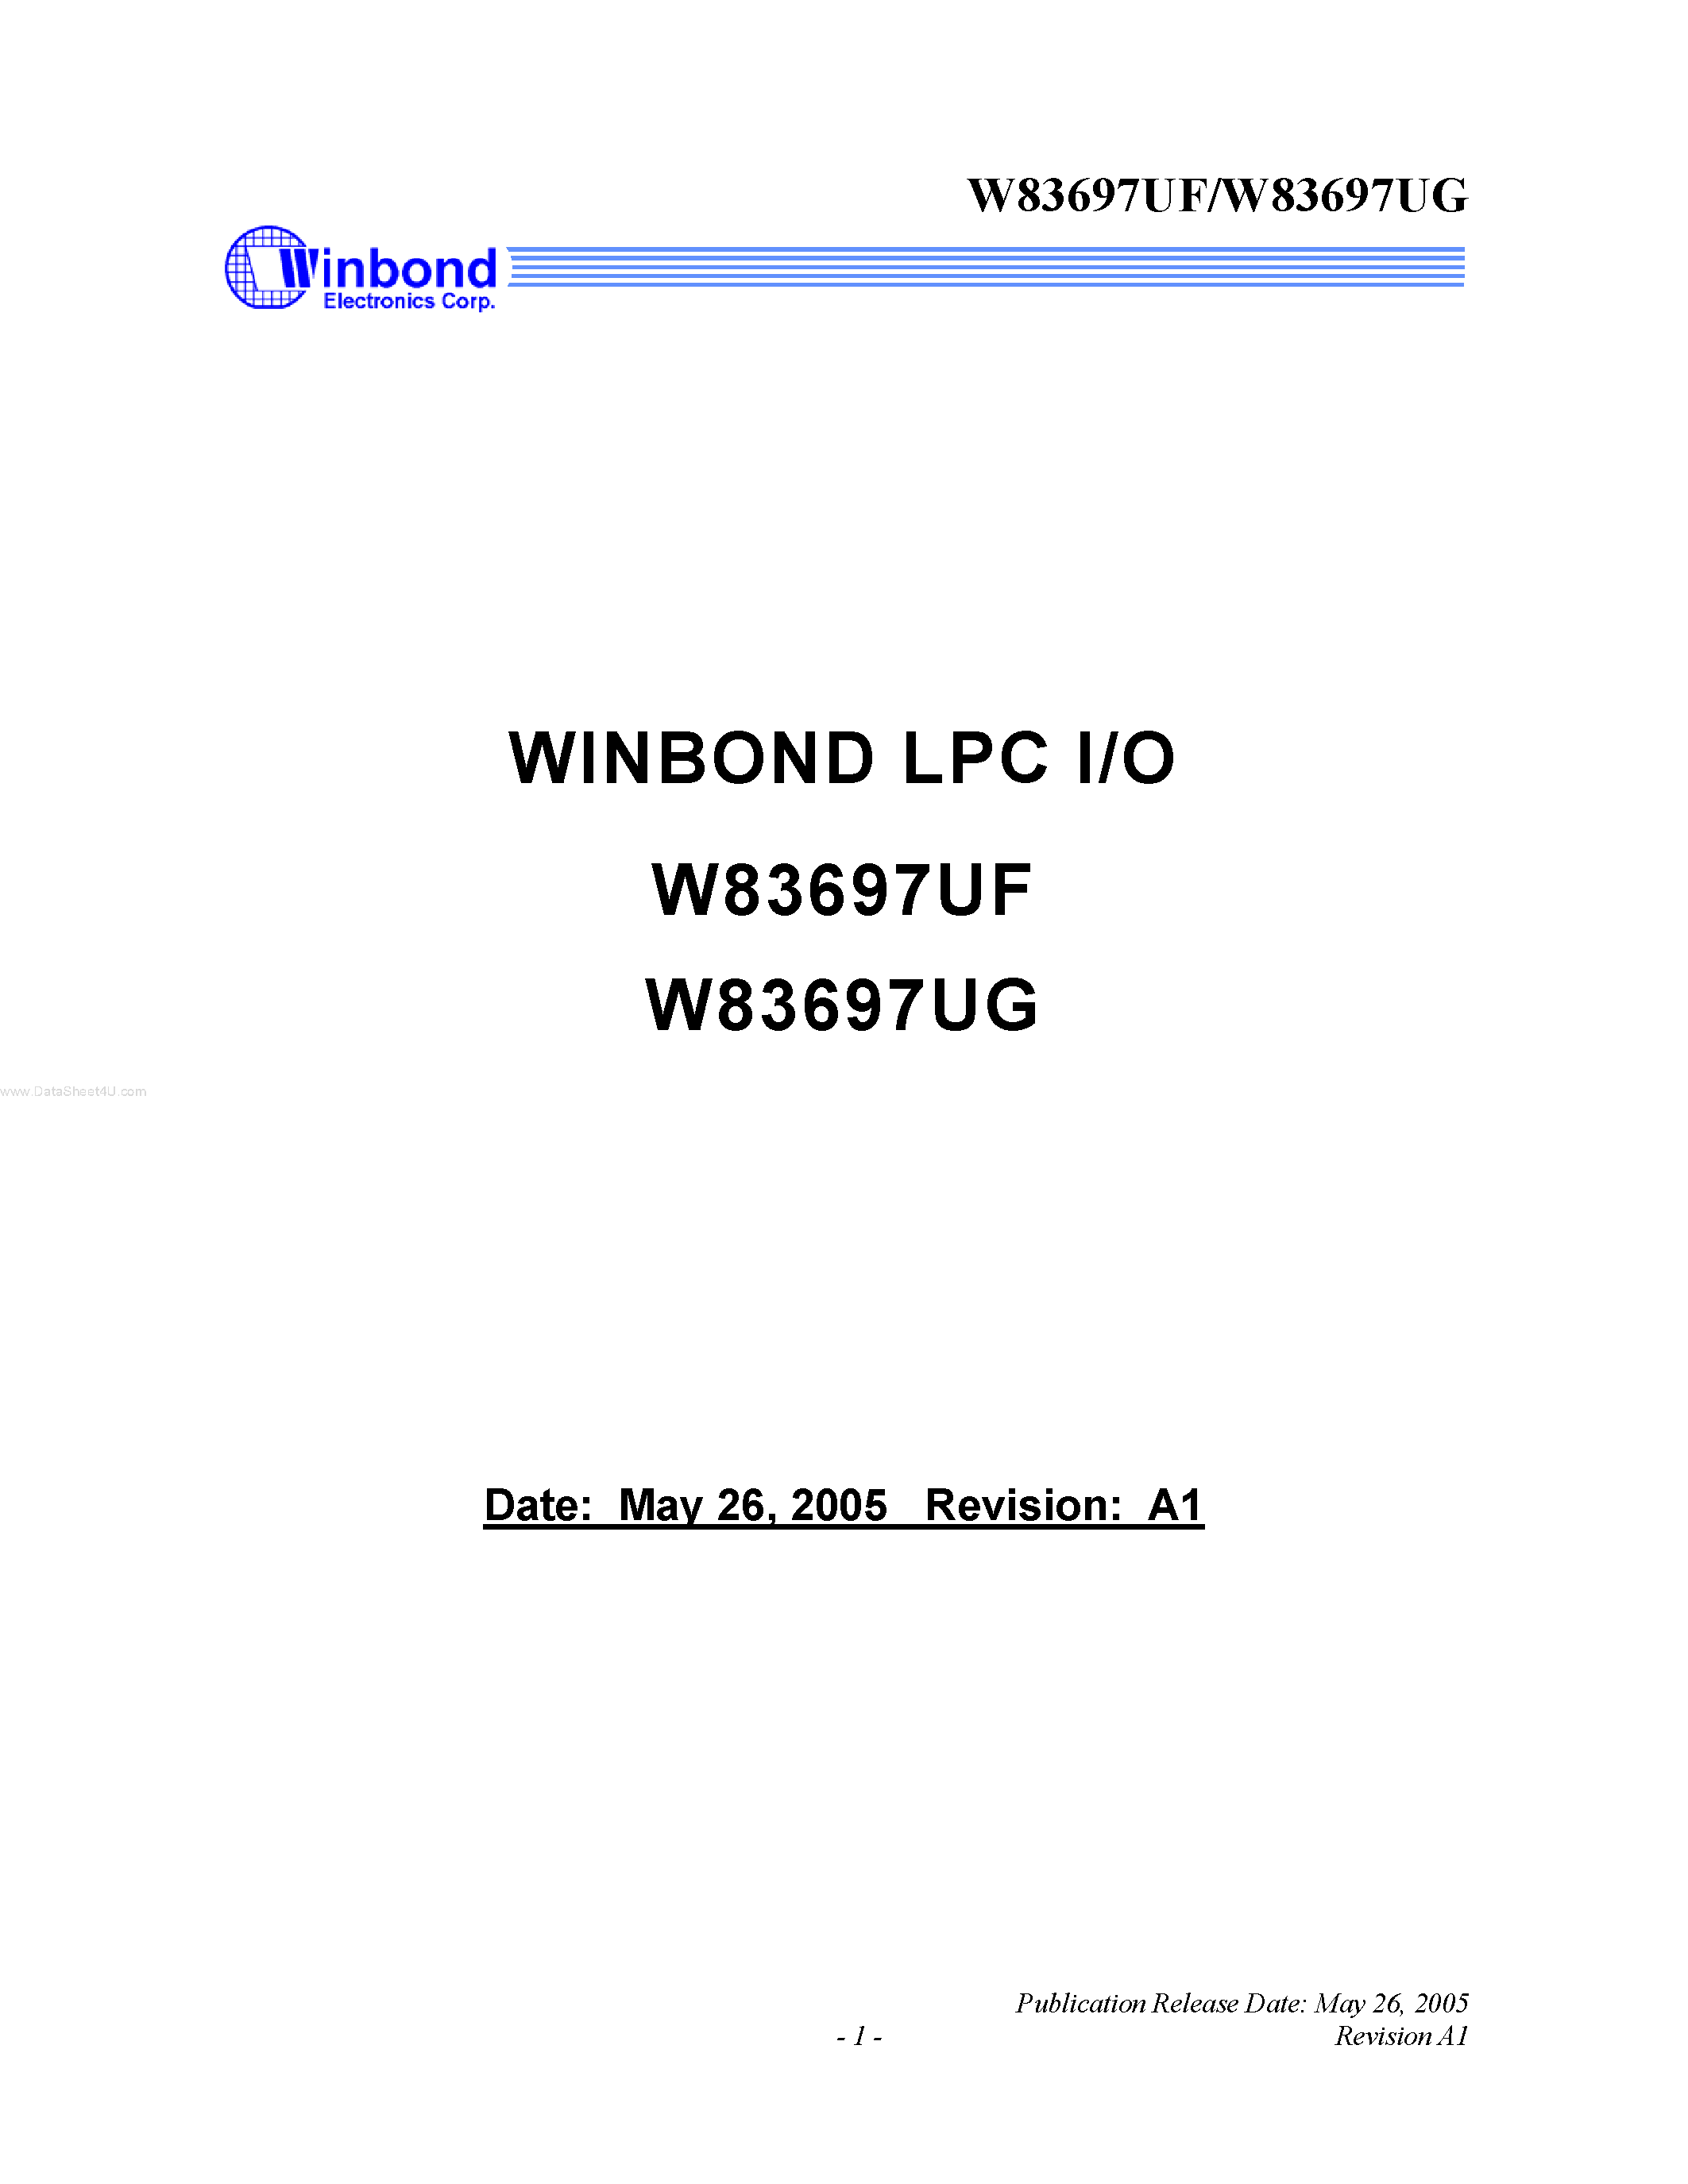 Datasheet W83697UF - LPC I/O page 1